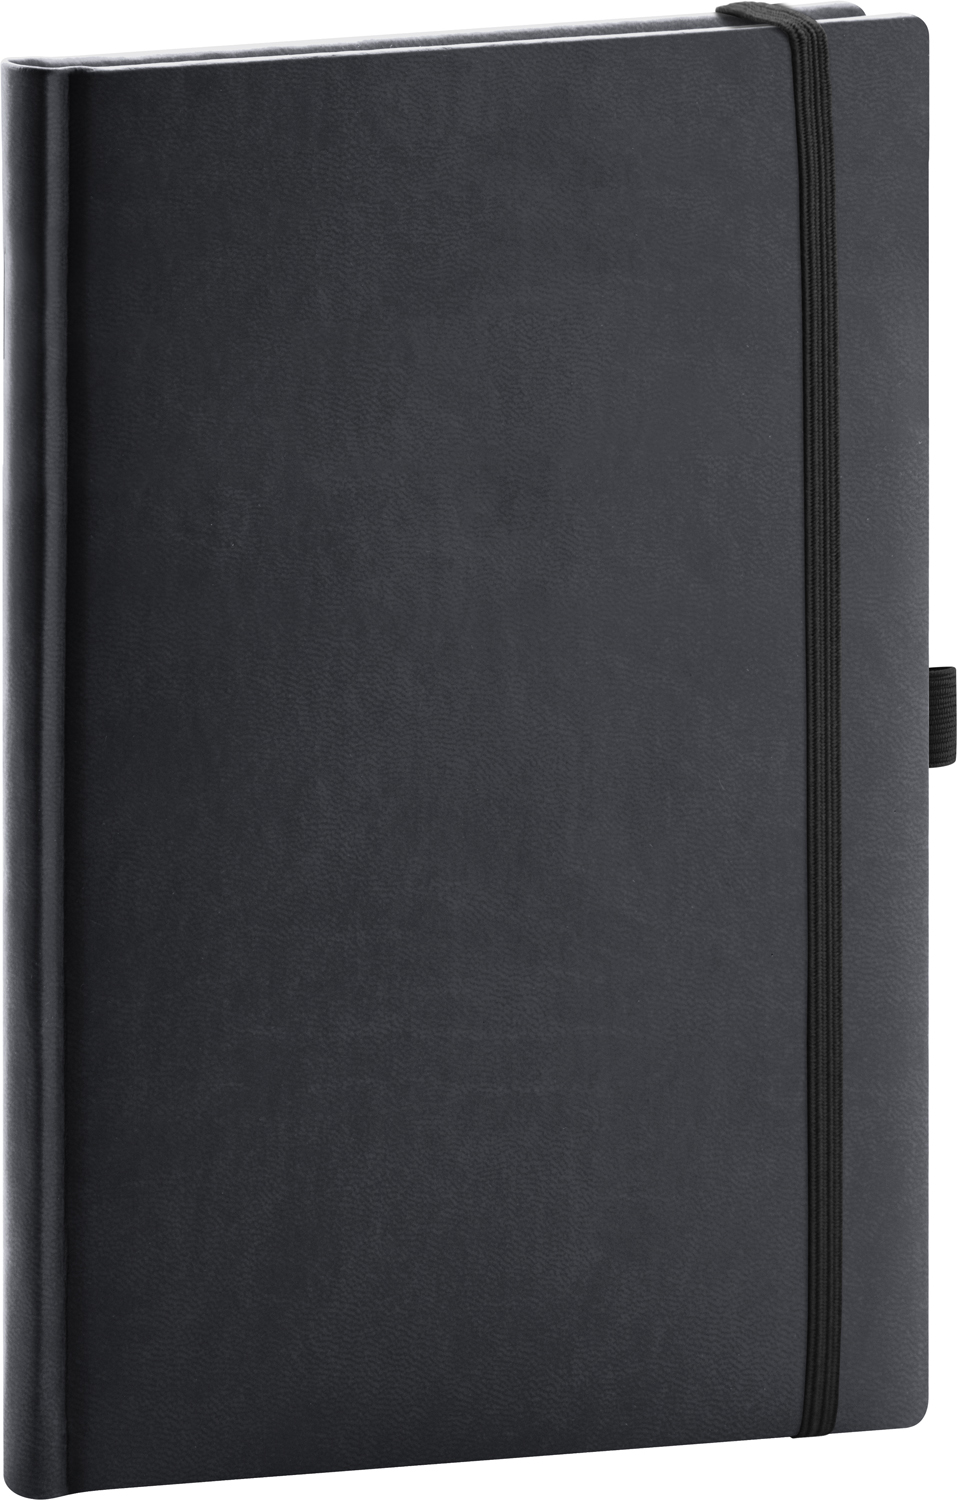 Linkovaný zápisník Aprint, A5 - černá